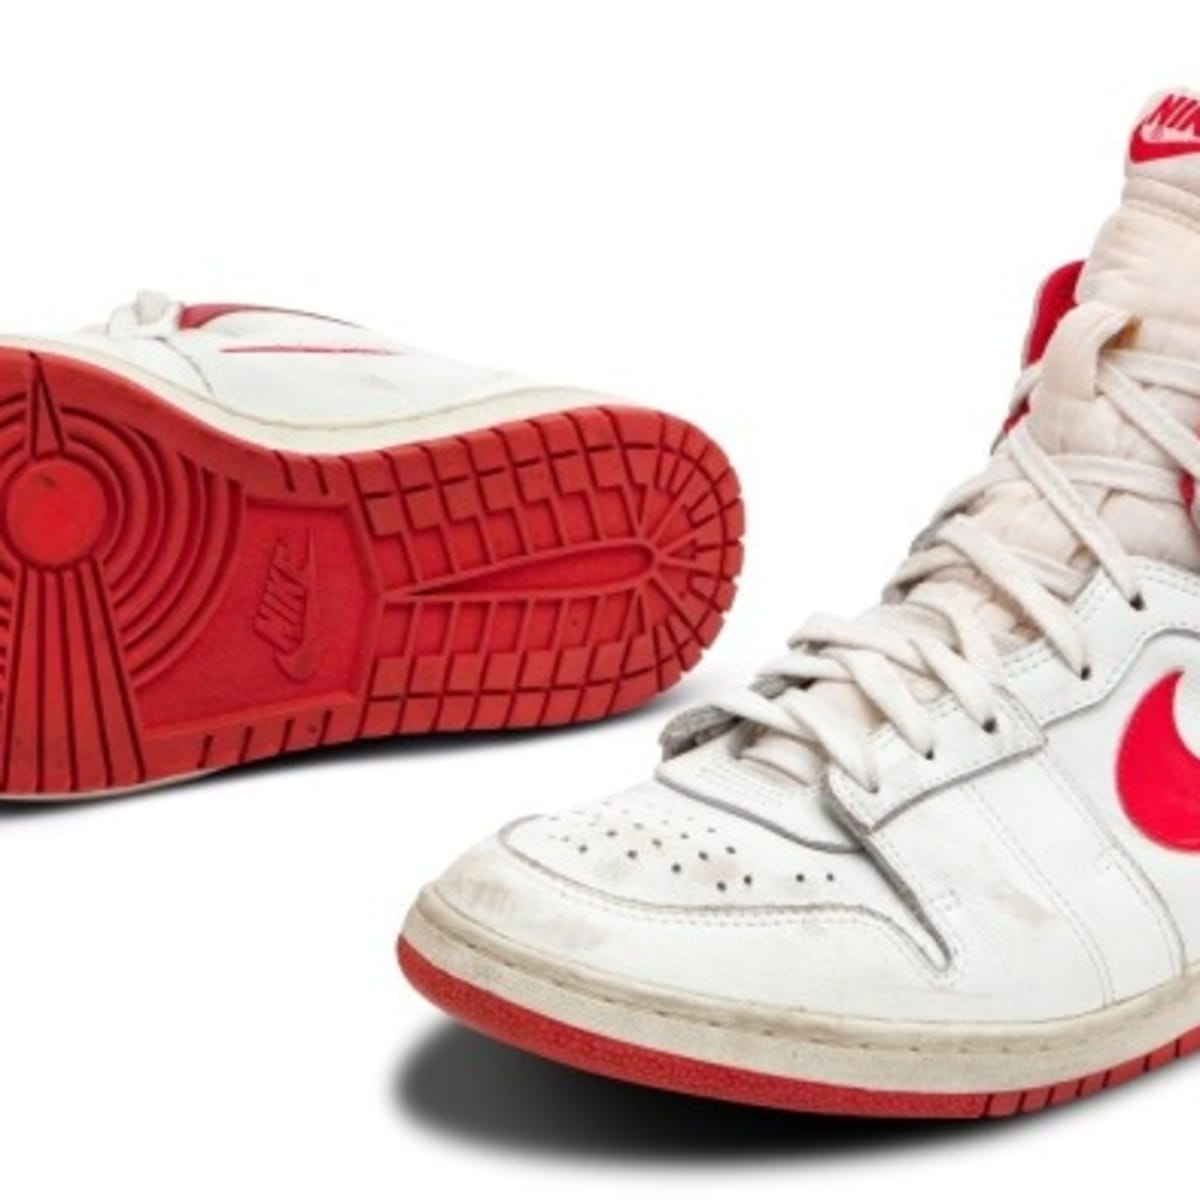 Michael Jordan game-worn sneakers sold 